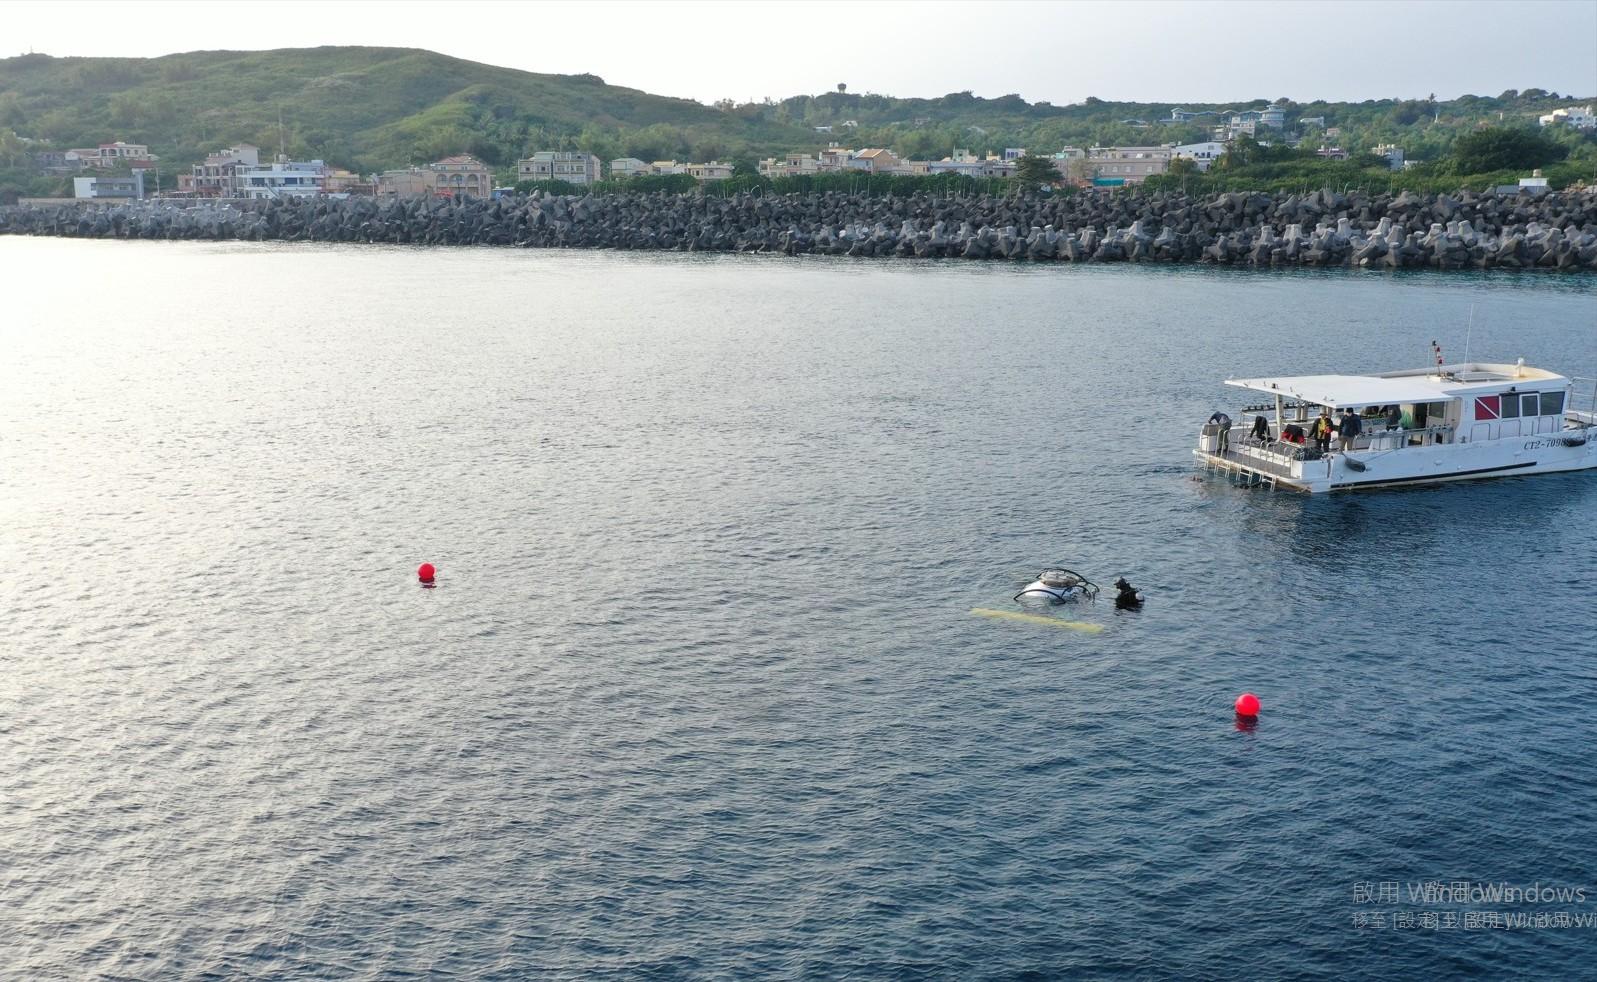  檢視載人載具於實海域測試佈放流程，並於開放海域測試動力及電控系統